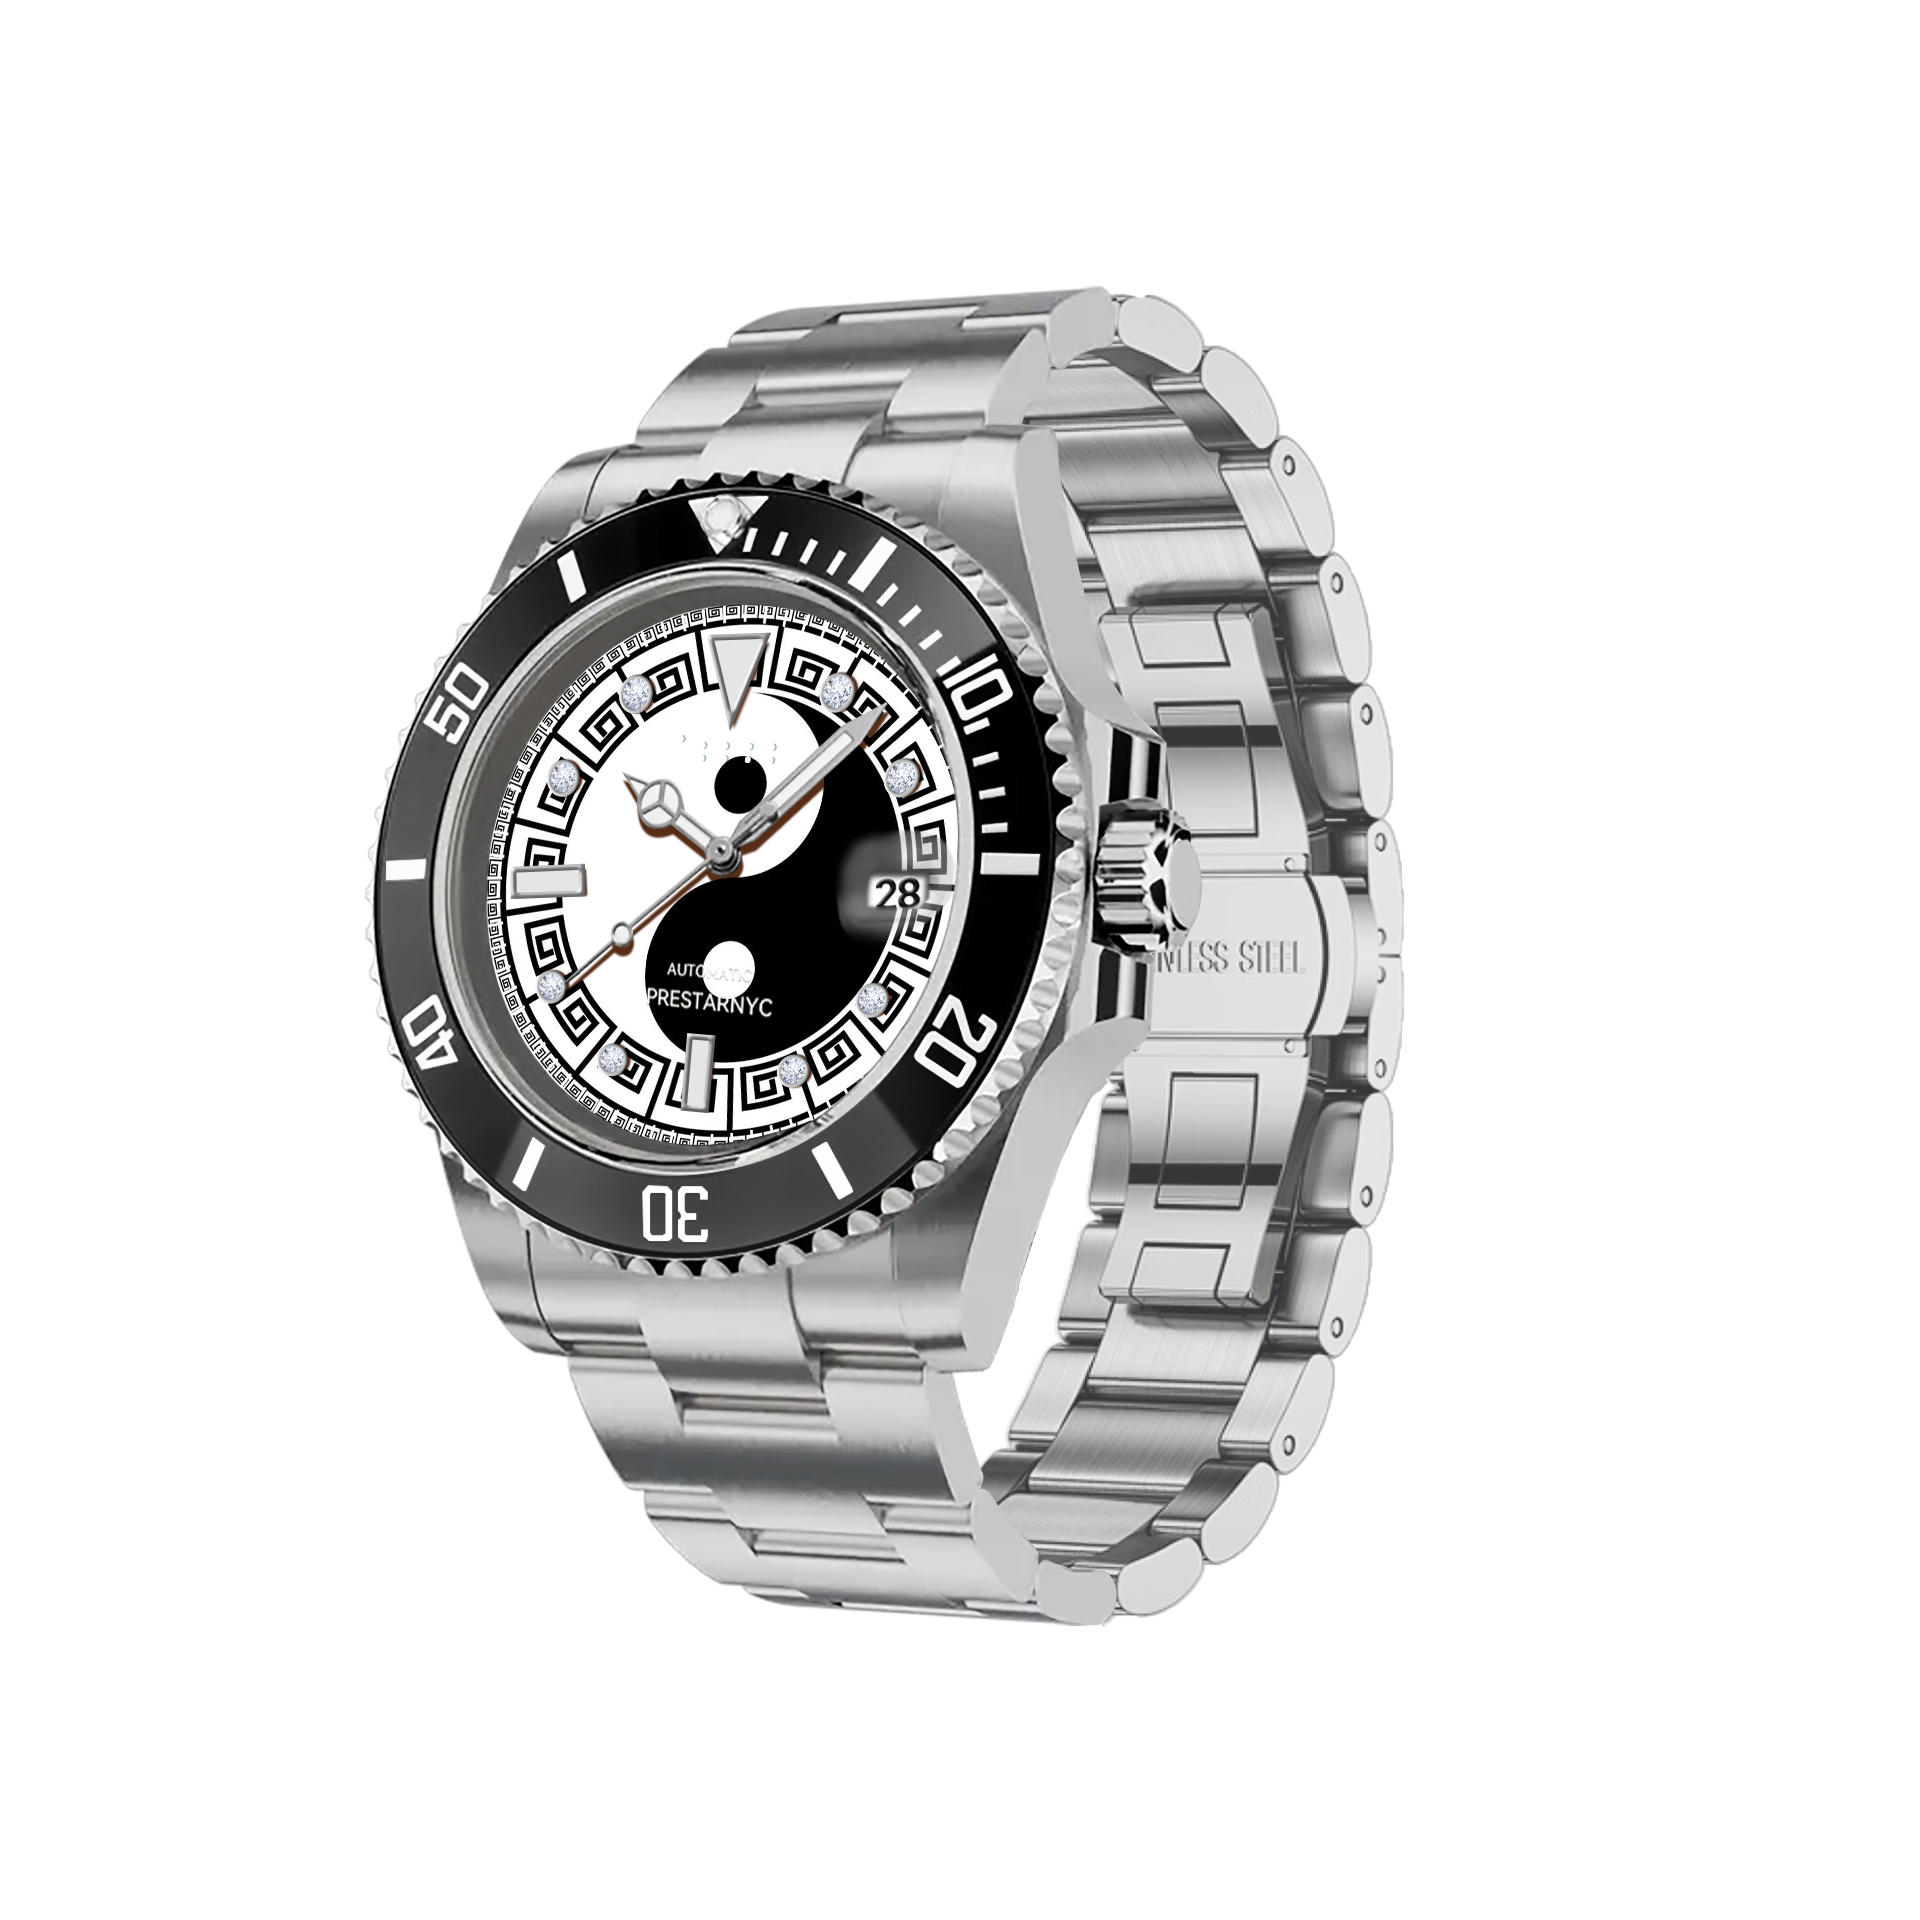 Prestar NYC Aquaman Initial Mechanical Watch (Yin Yang Balance)